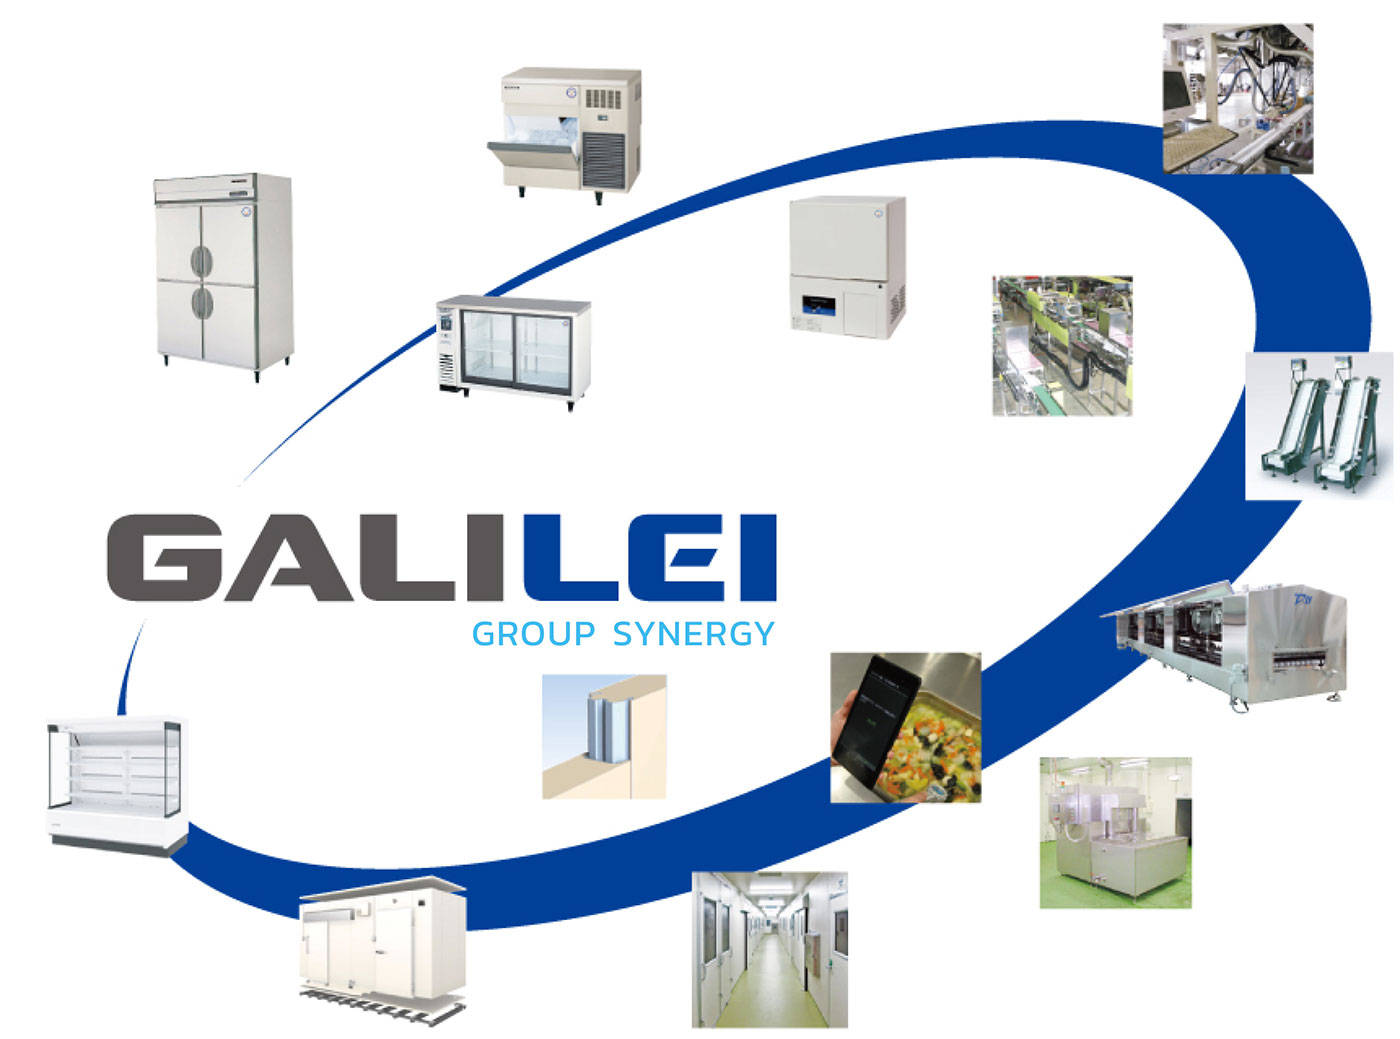 GALILEI Group